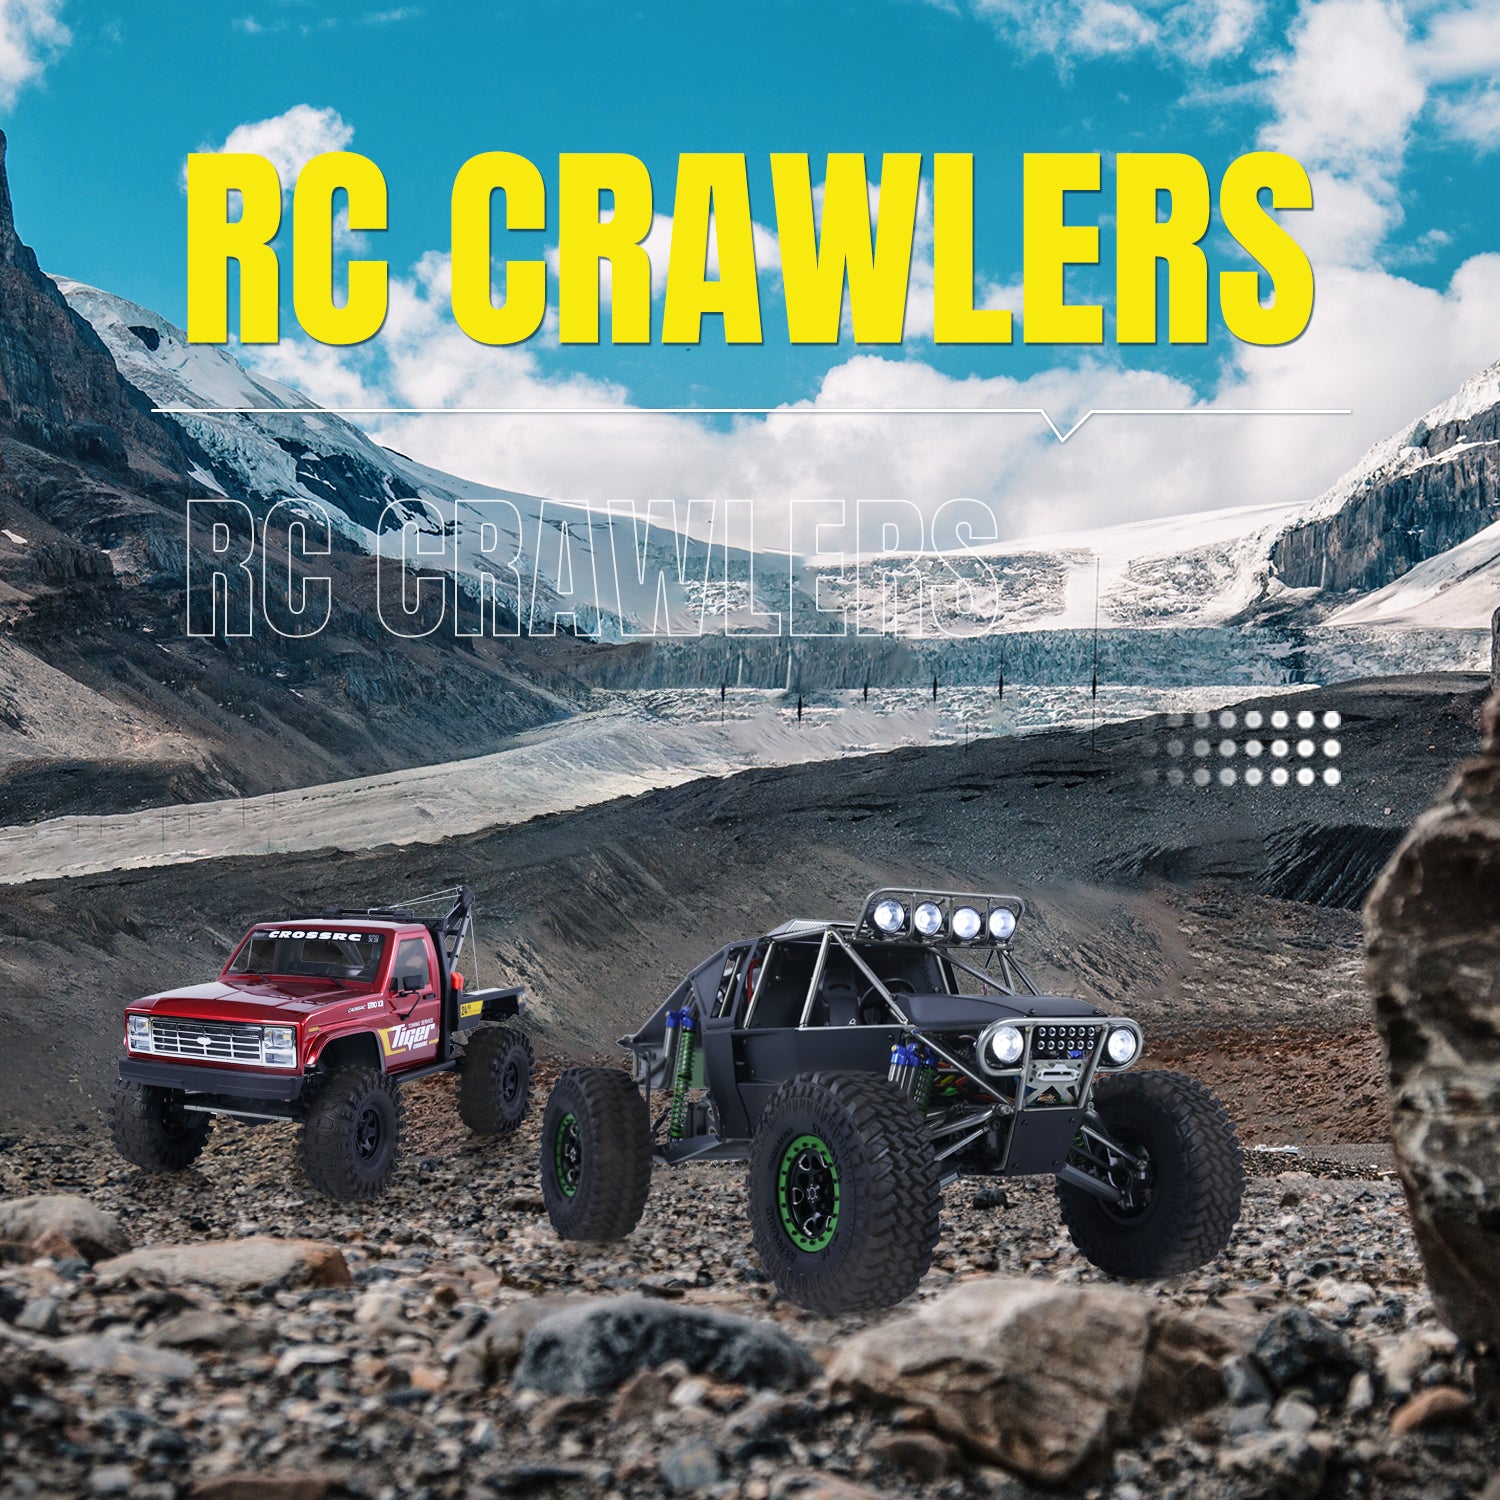 RC Crawlers